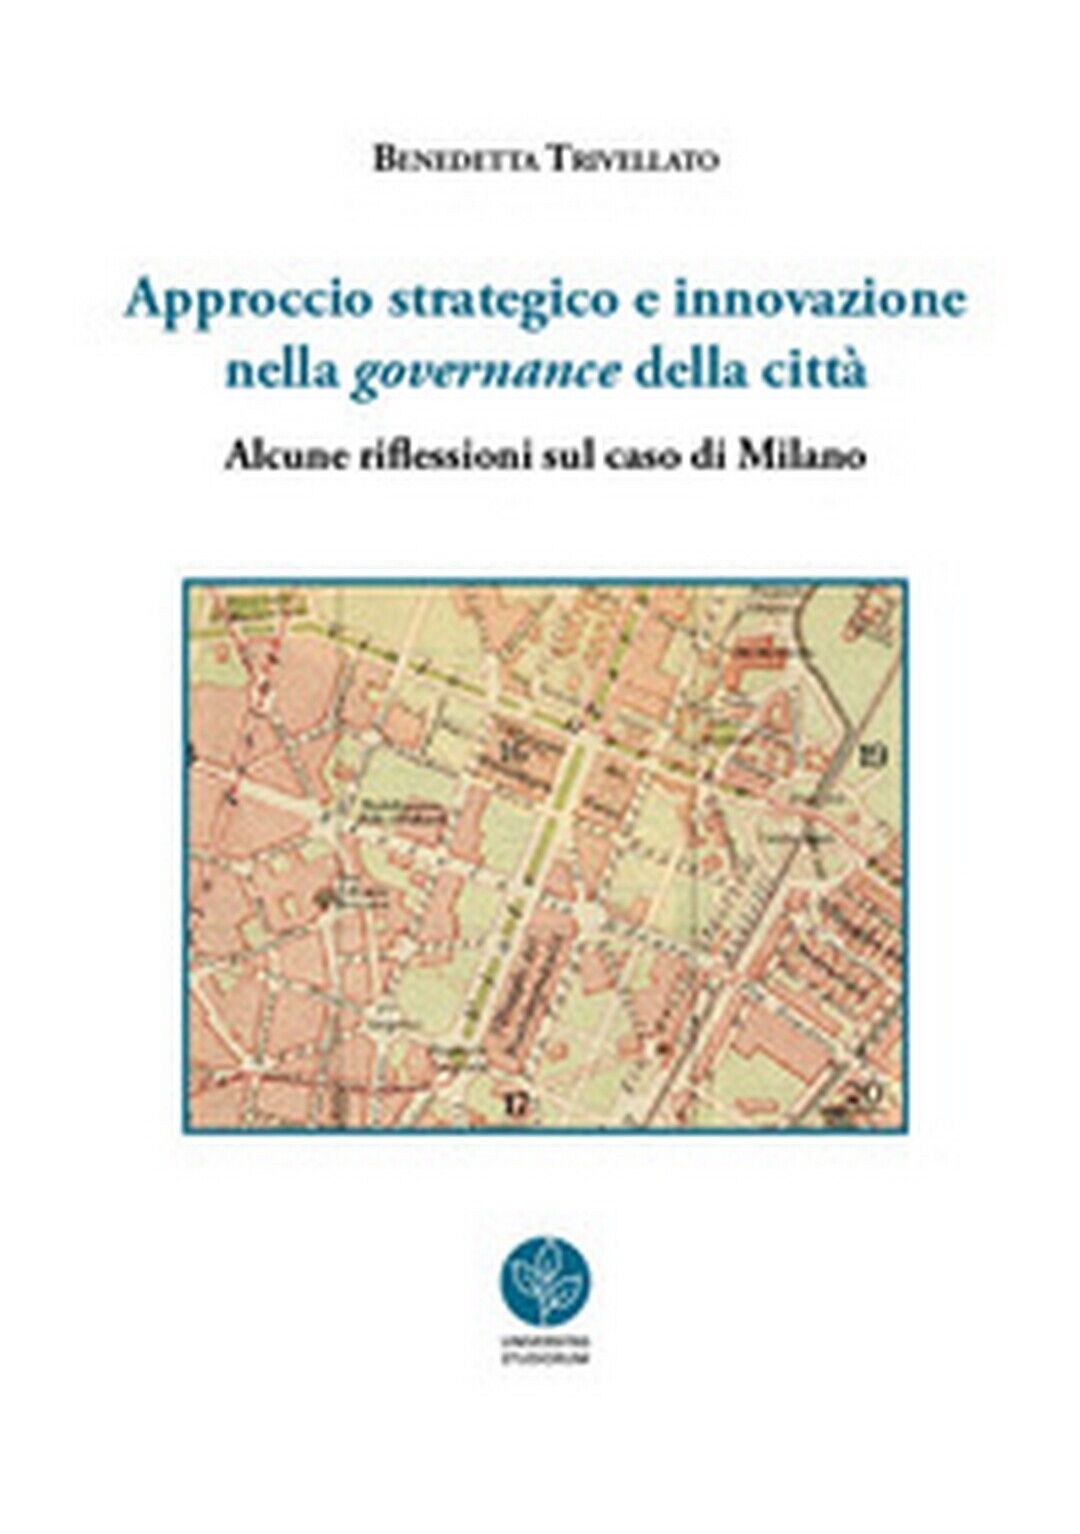 Approccio strategico e innovazione nella governance della citt?.